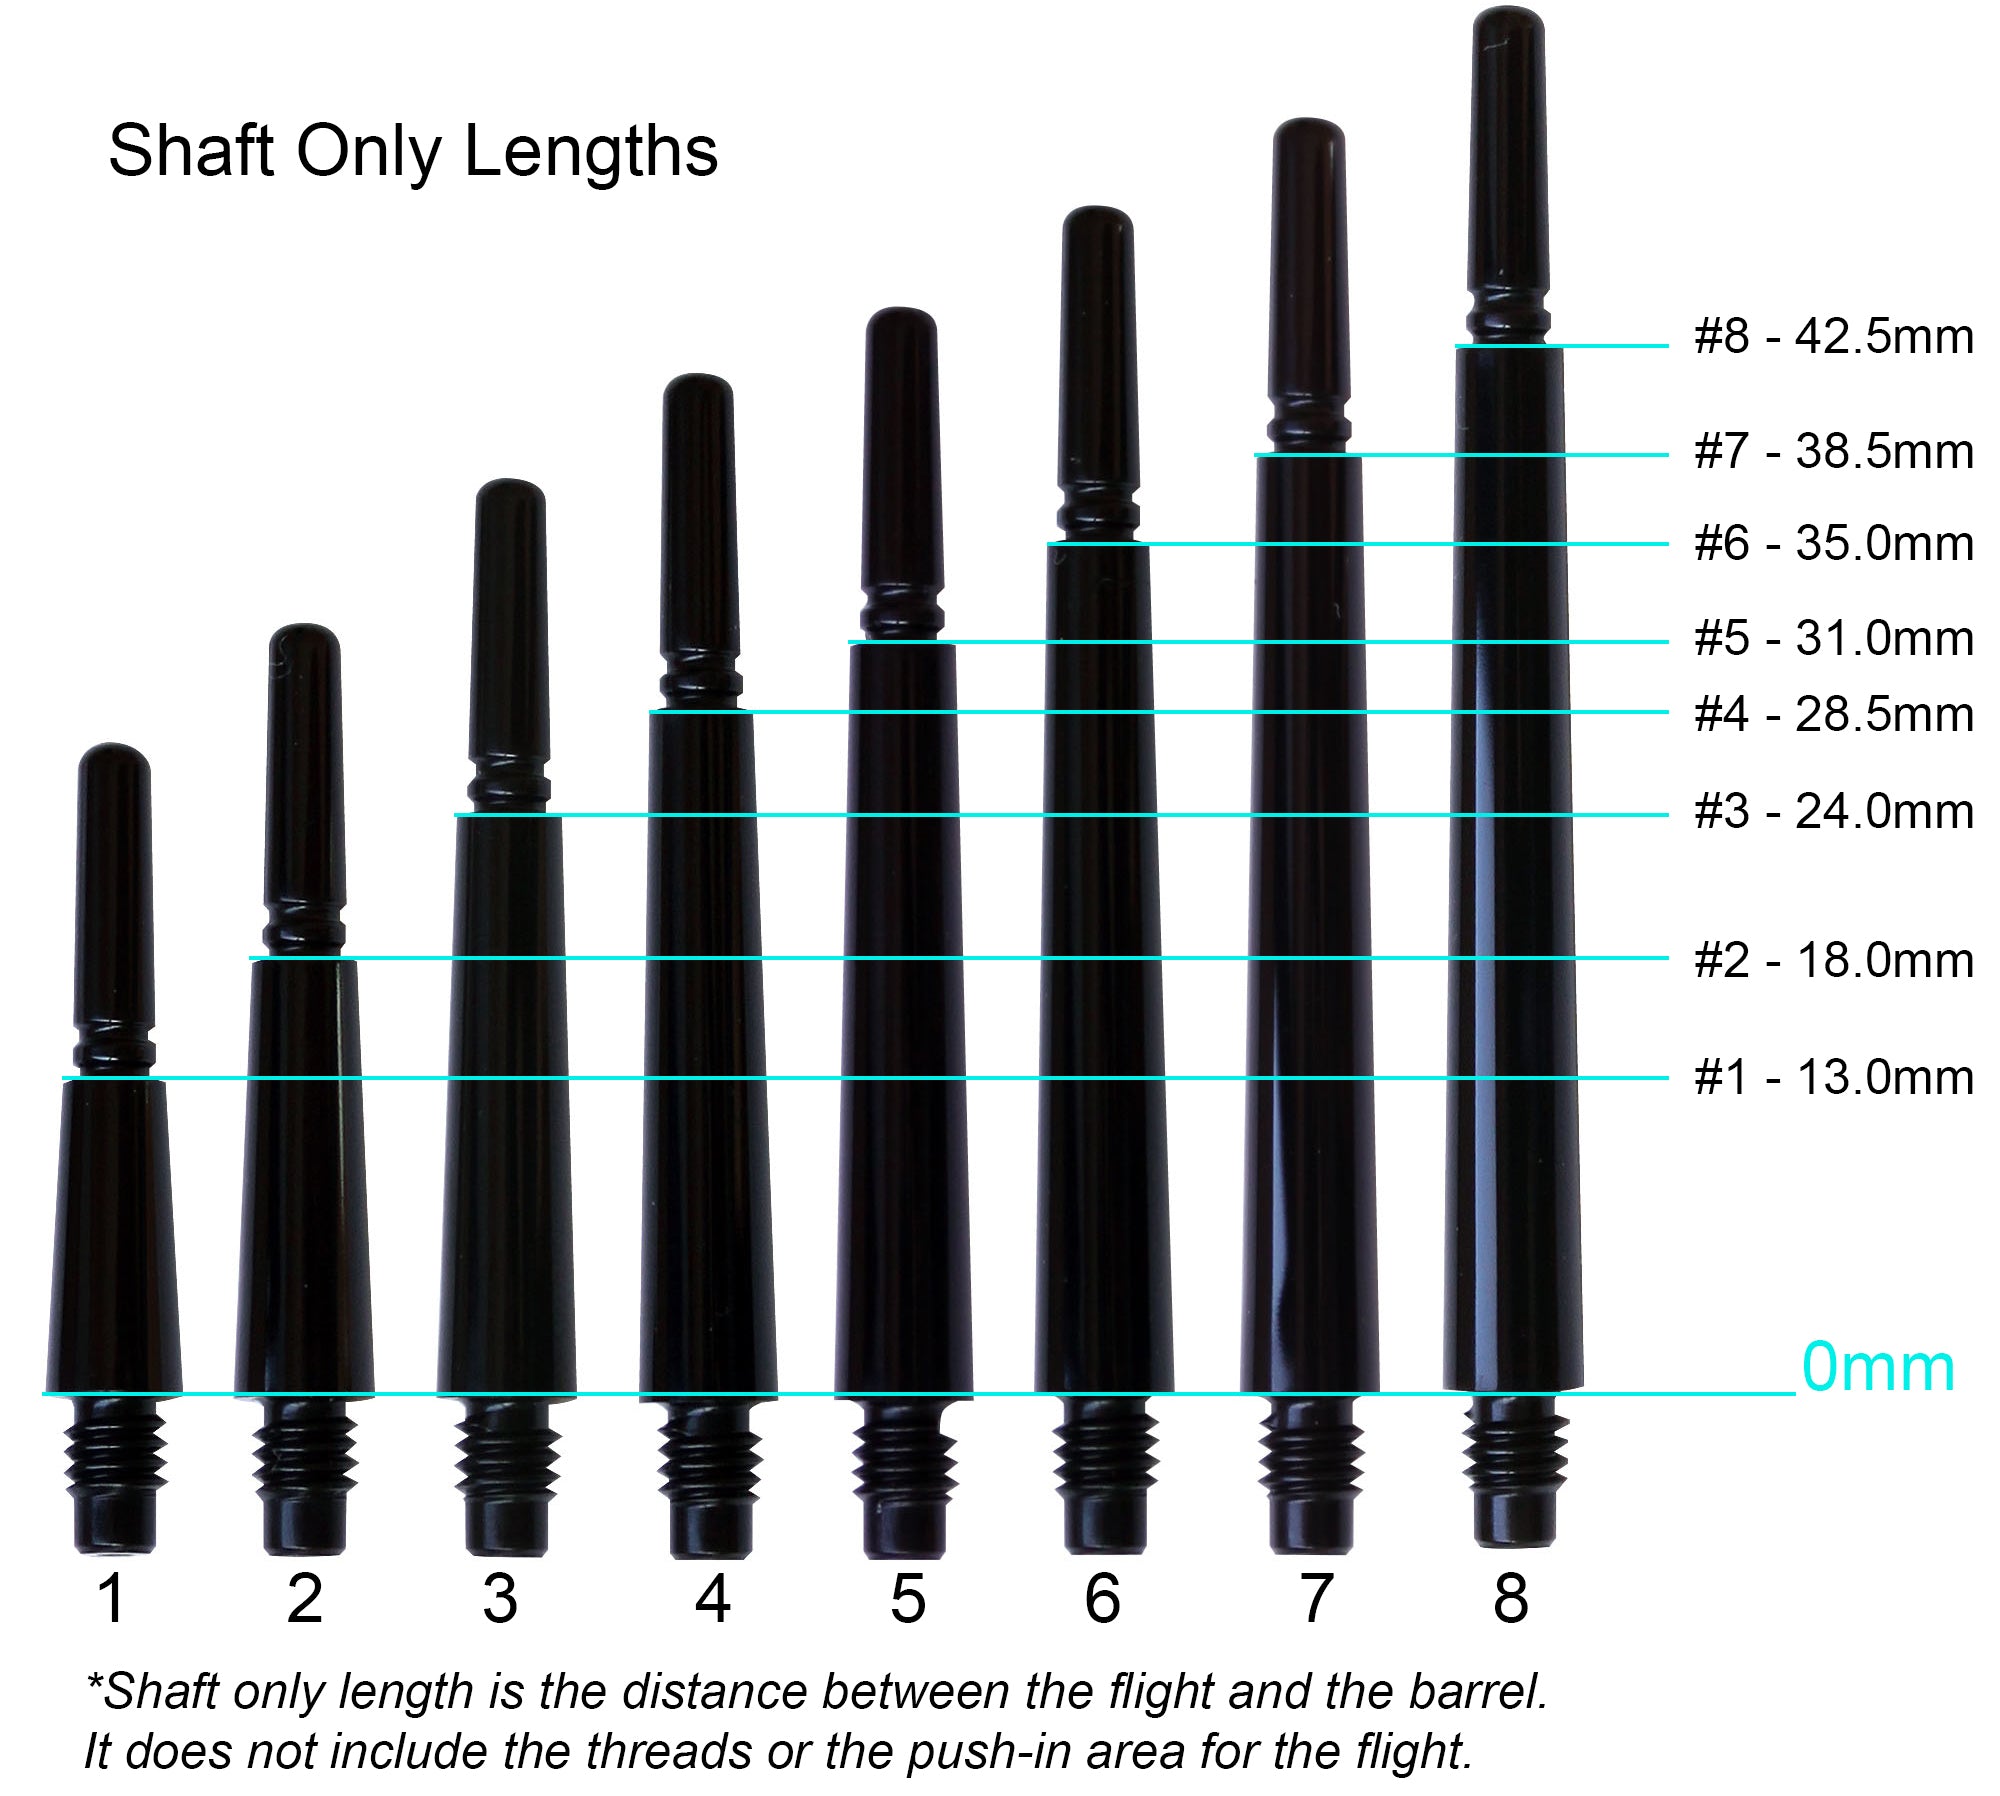 Fit Flight Gear Slim Spinning Dart Shafts - Super X-Short #1 (13.0mm) LT Blue